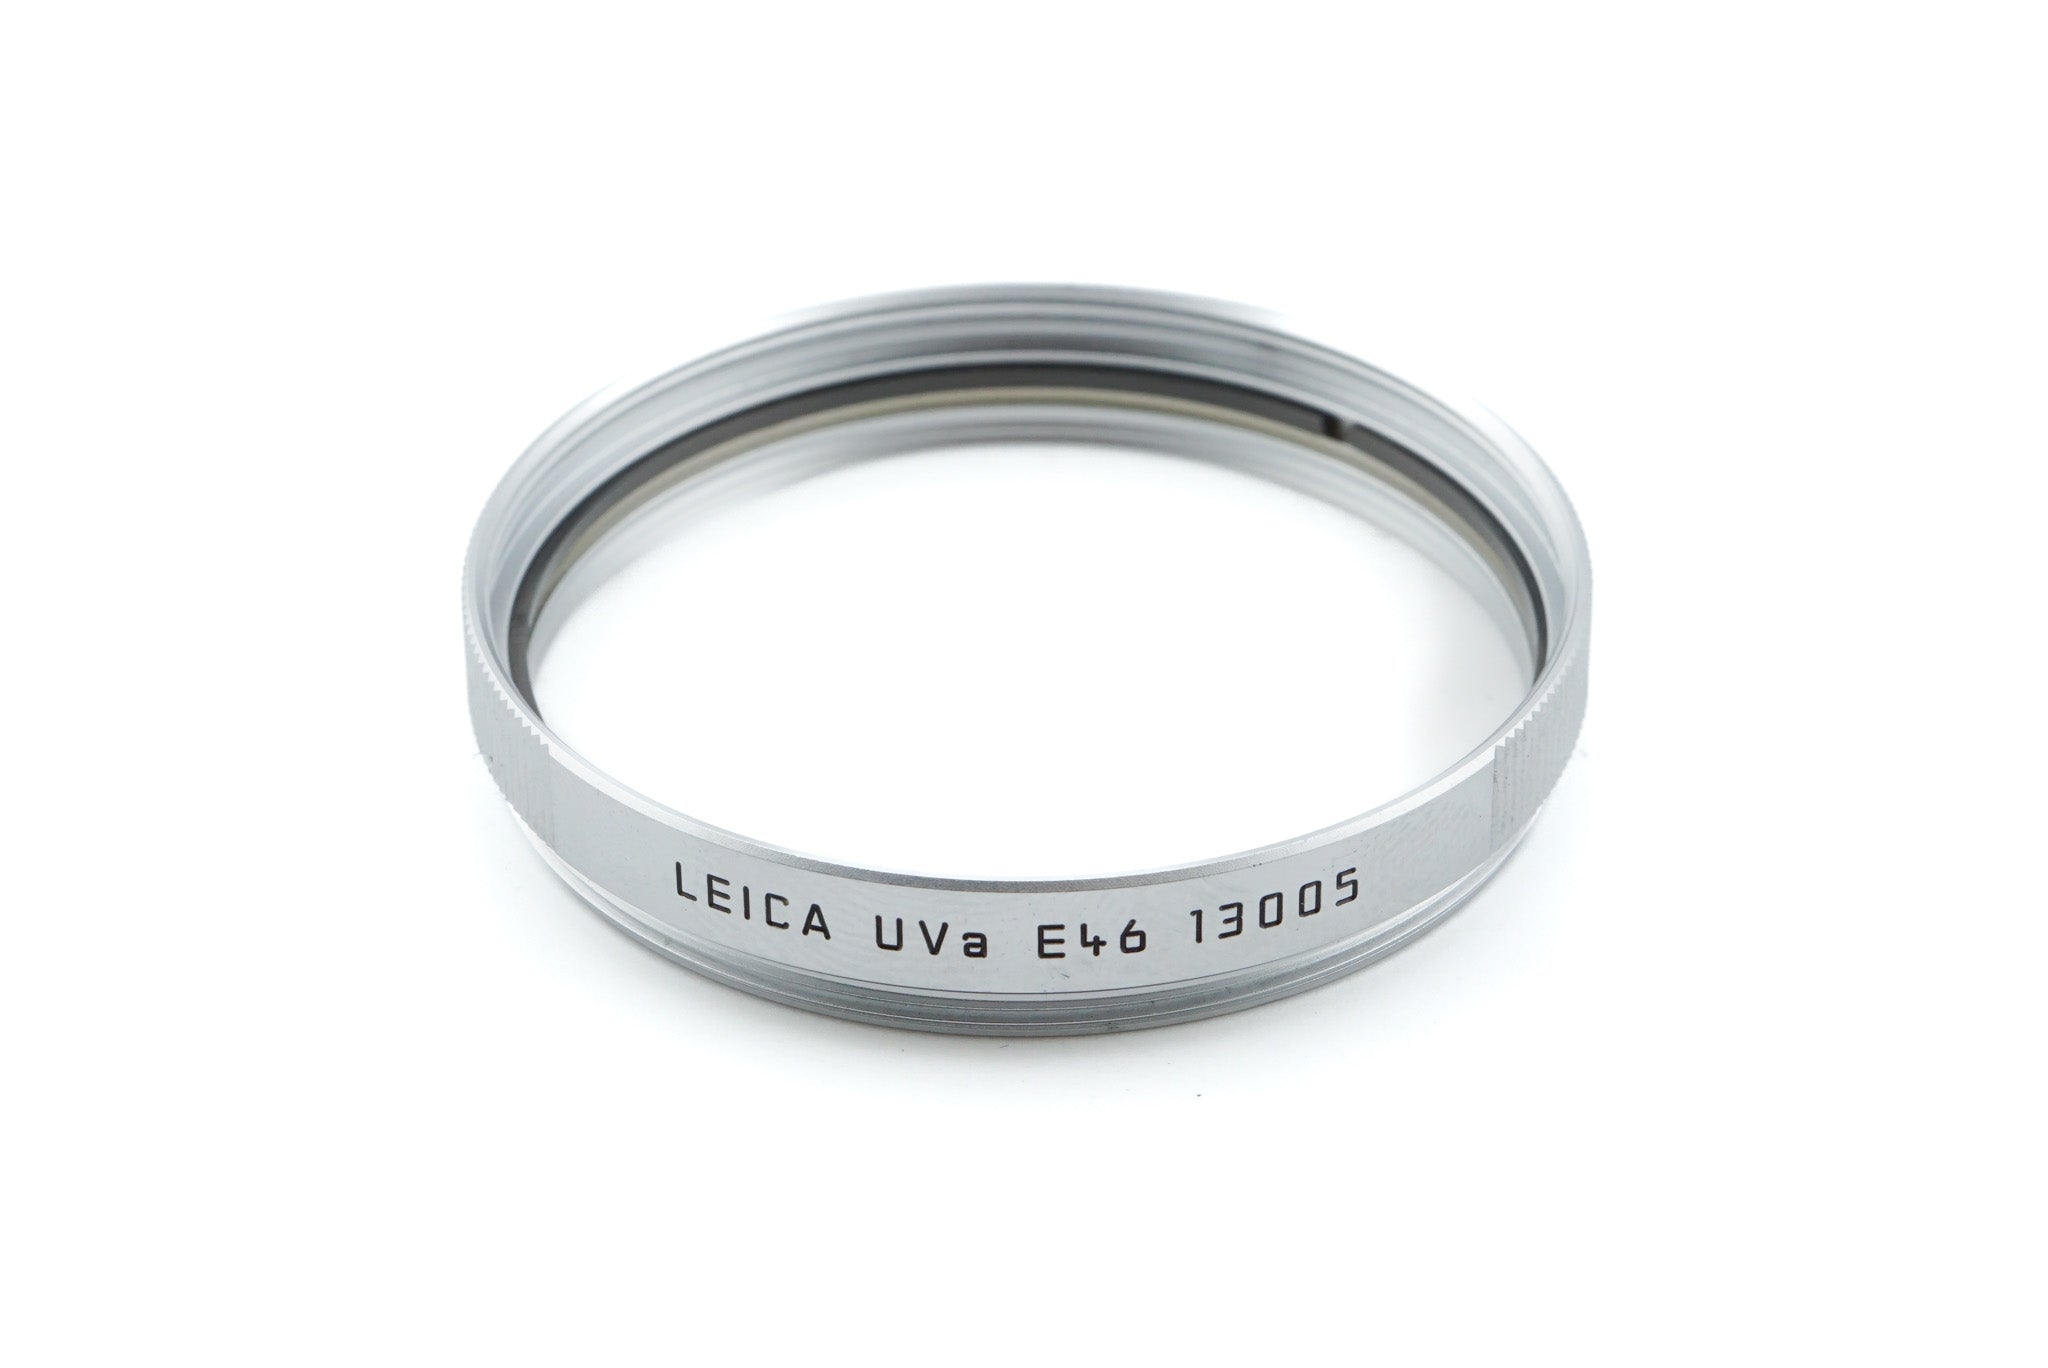 Leica E46 UVa Filter (13005) - Accessory